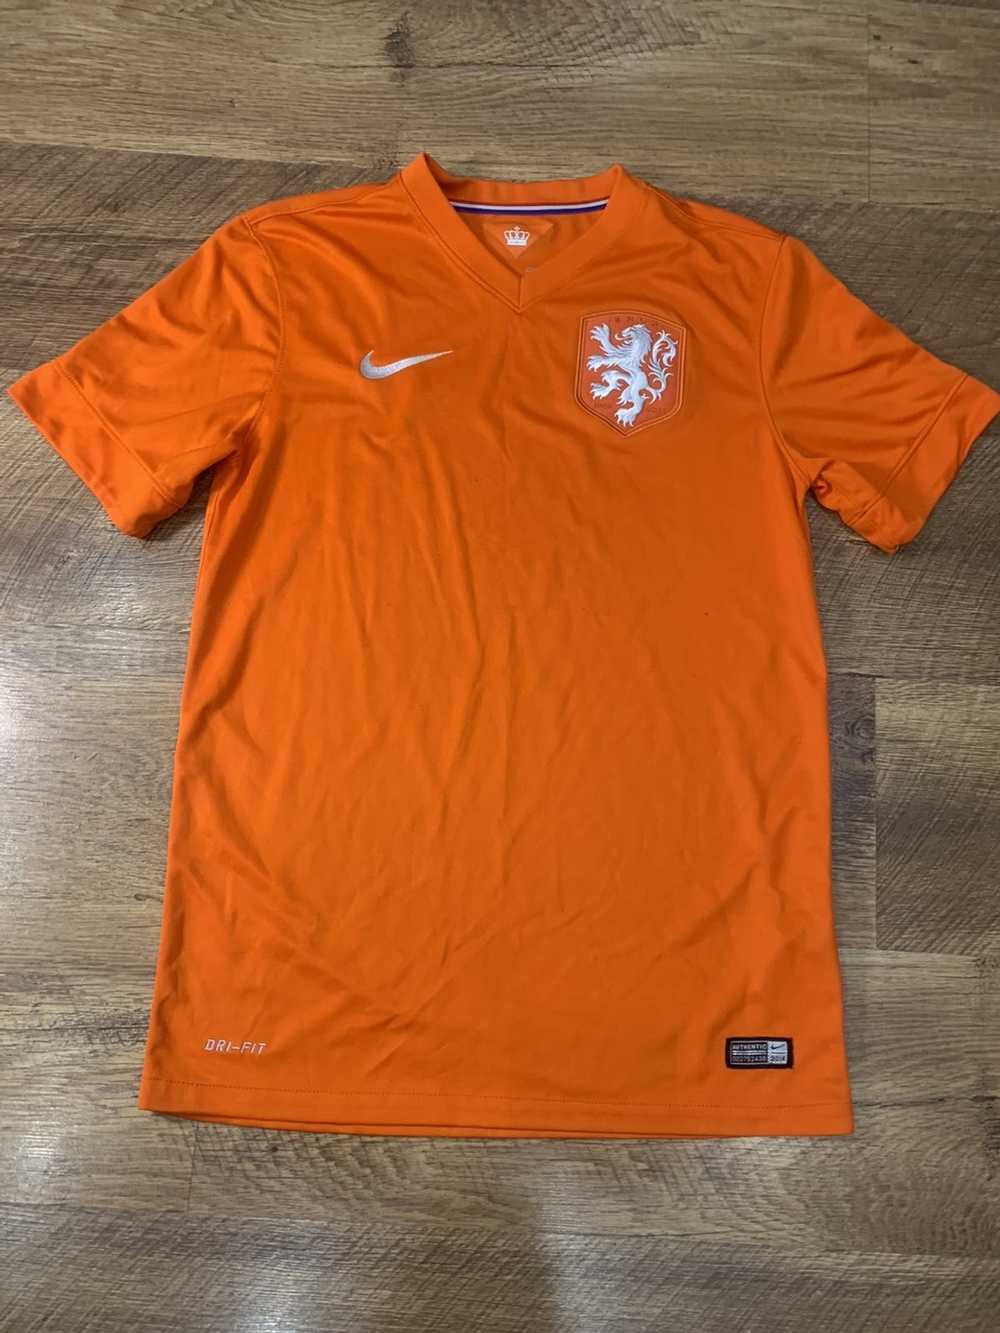 Jersey × Nike × Soccer Jersey Nike knvb Nederland… - image 1